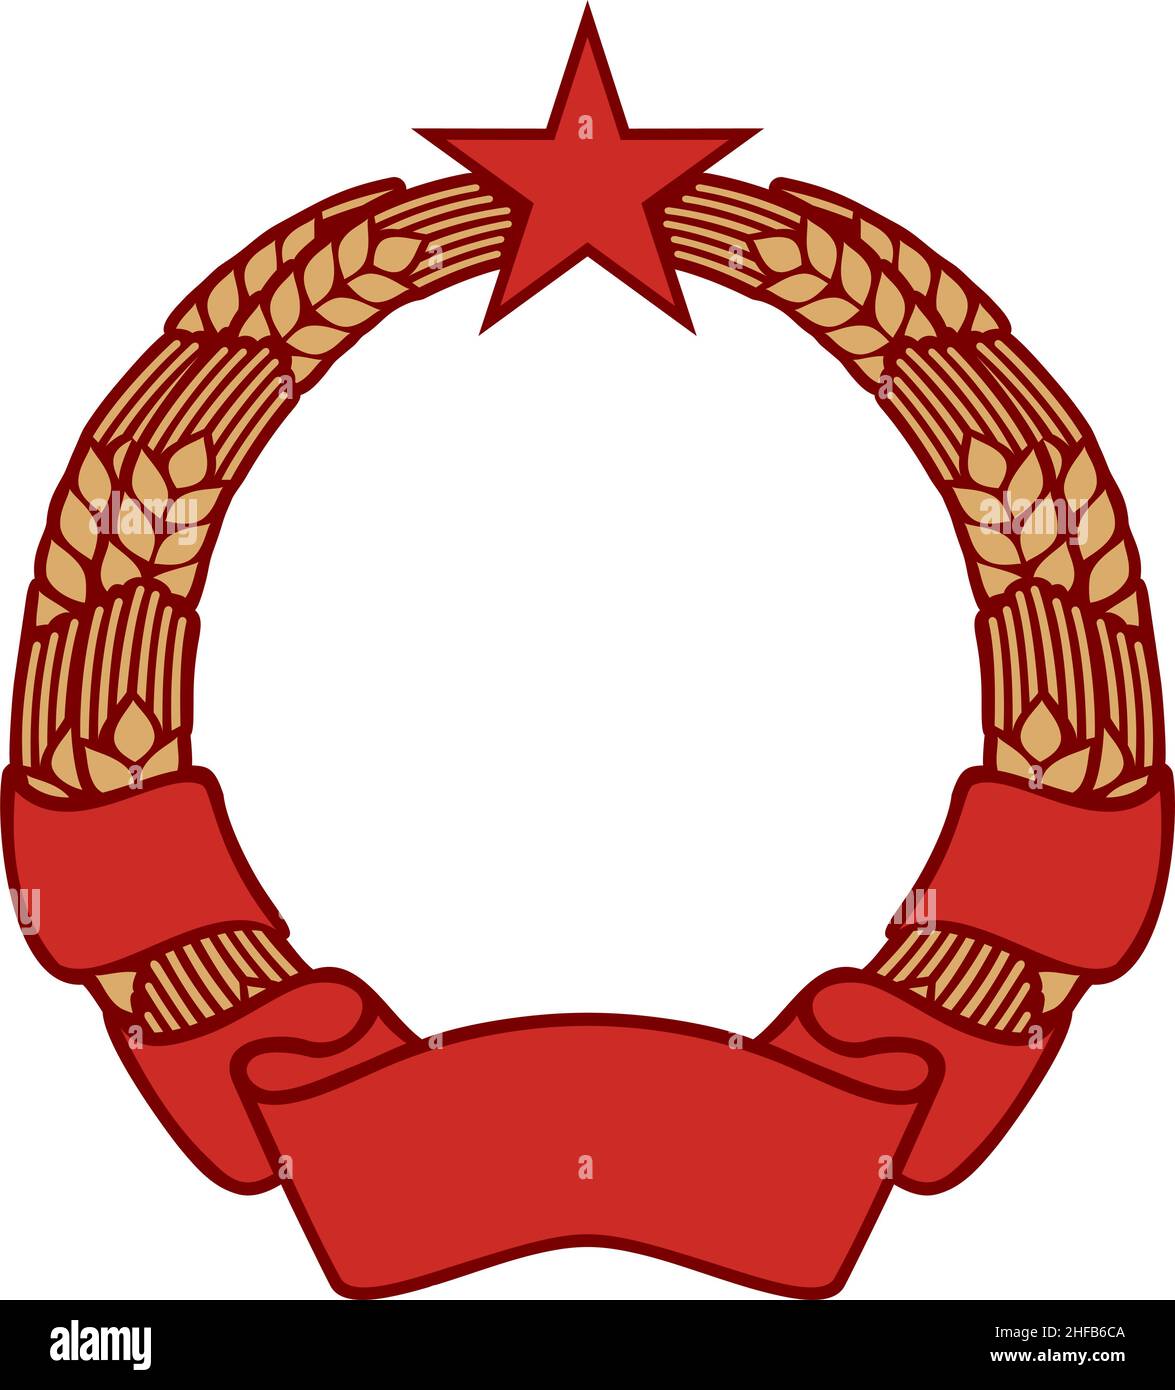 Symbol des Kommunismus mit Kranz aus Weizen, Stern und Banner (Ikone des Sozialismus). Vektorgrafik Stock Vektor